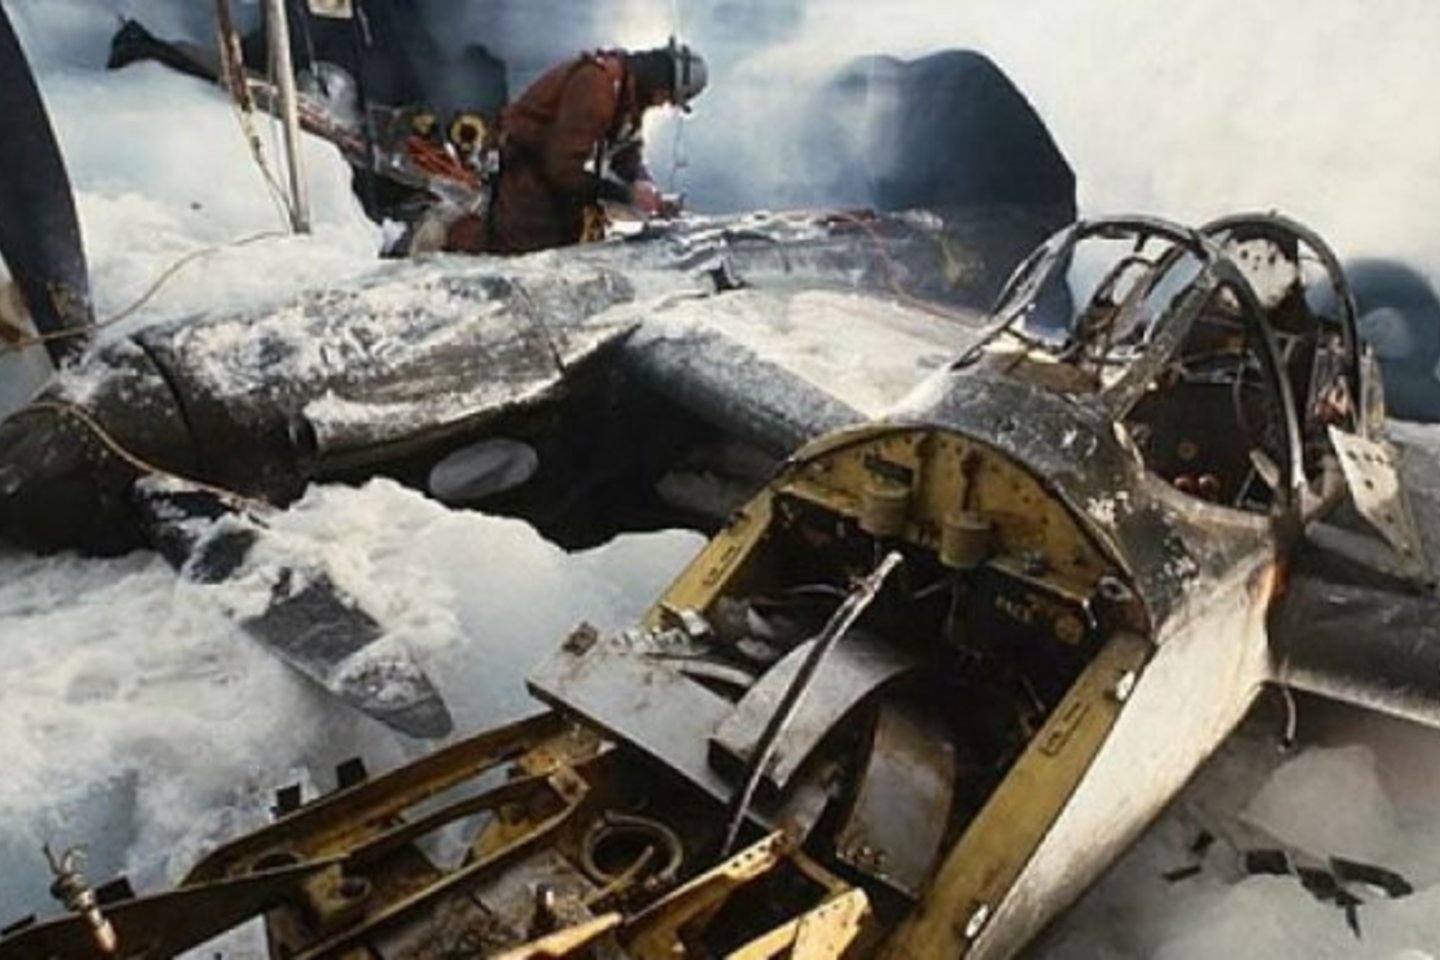  1992-aisiais vienas P-38 buvo ištrauktas iš ledo ir restauruotas.<br> WarbirdsNews.com iliustr.